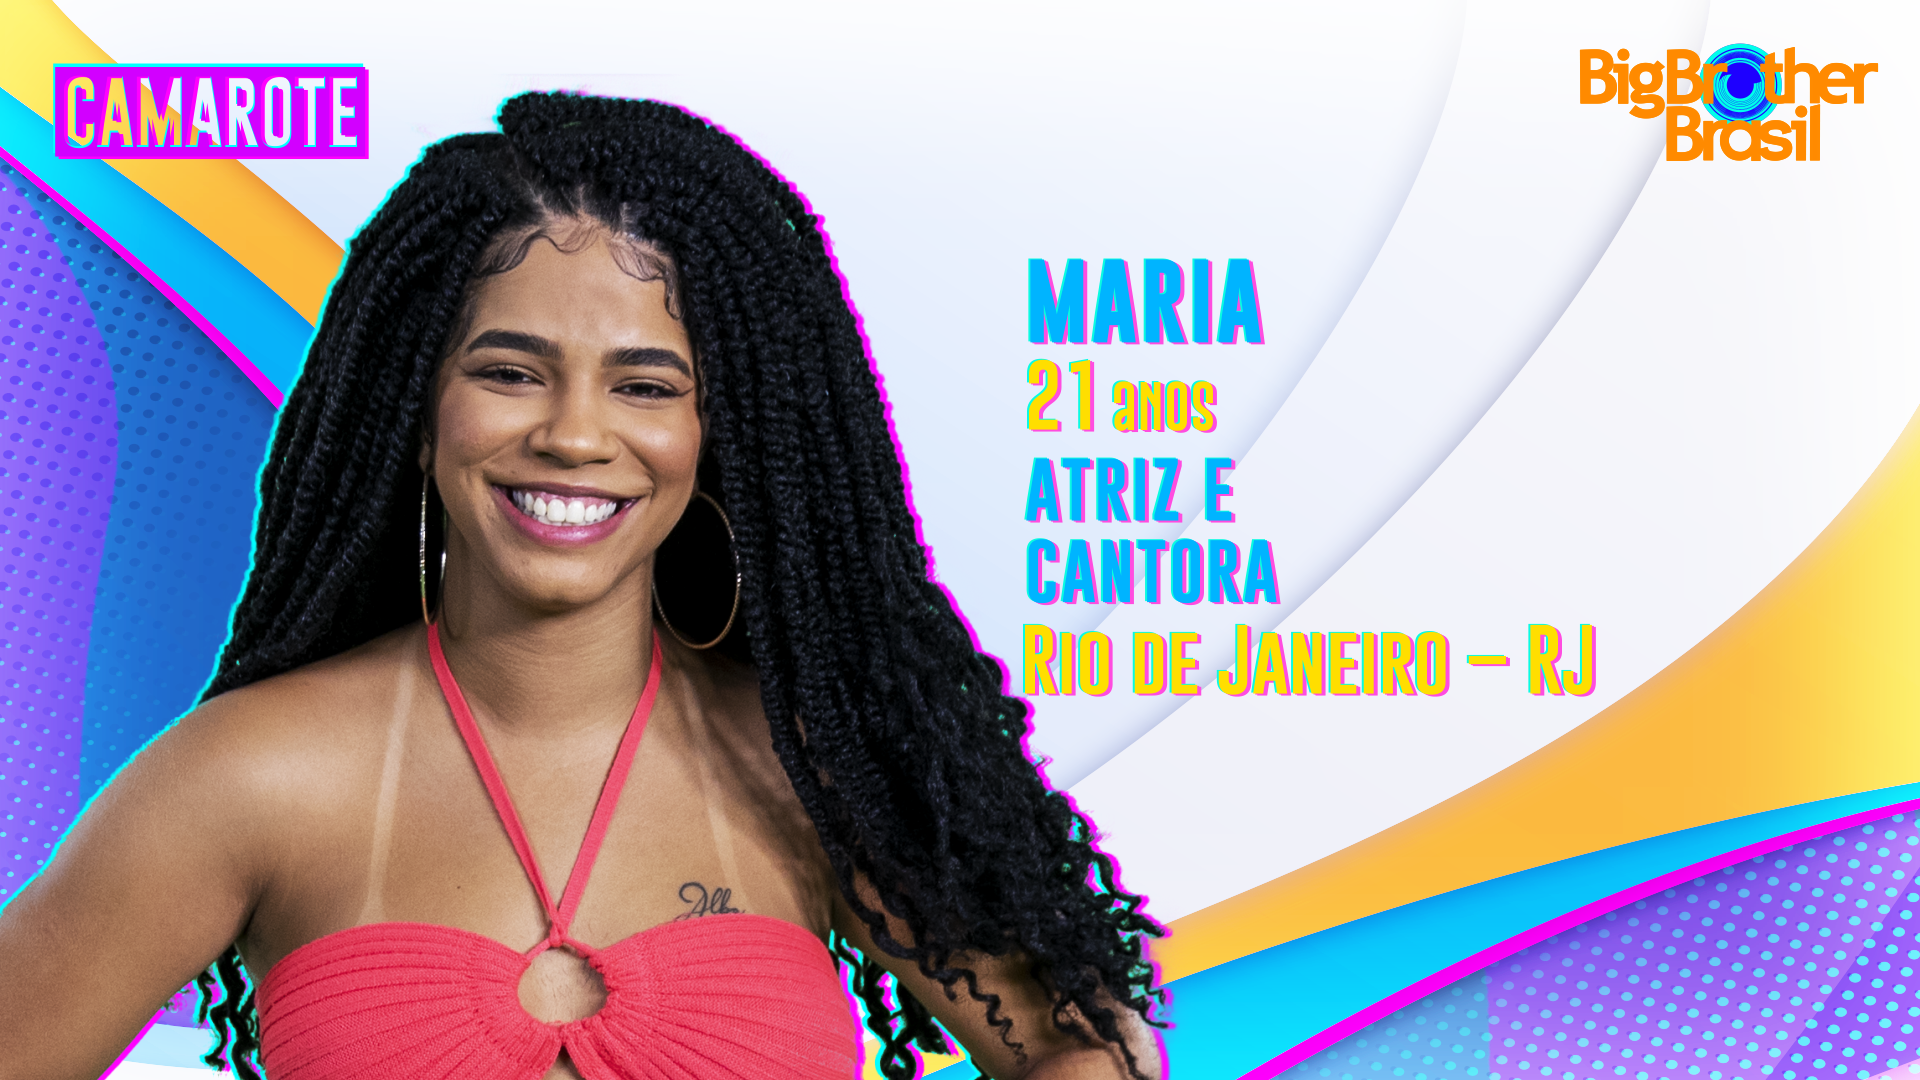 Maria integra o grupo Camarote do BBB22 (Foto: Divulgação Globo)